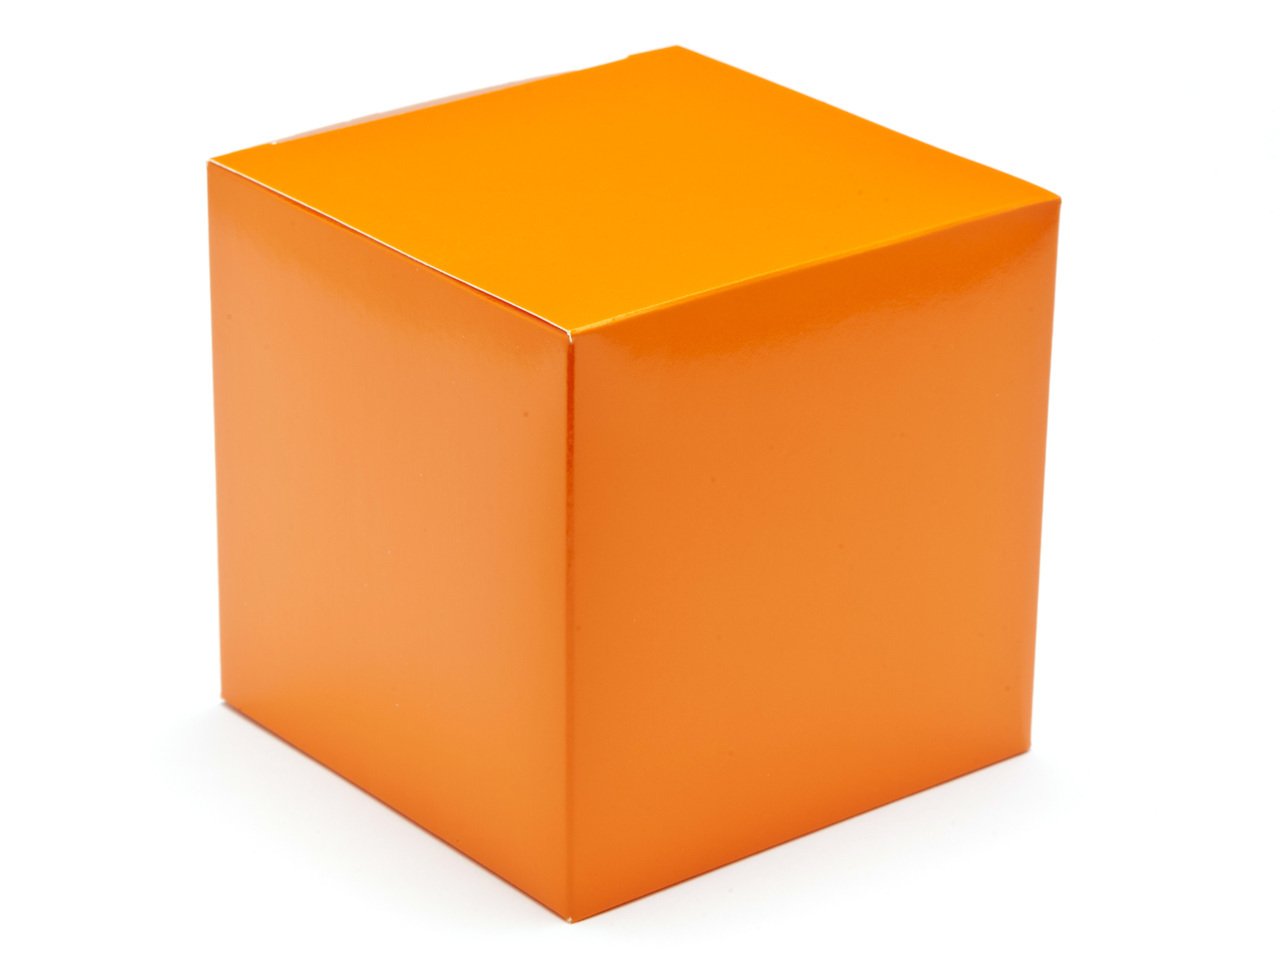 Reg kz. Оранжевый кубик. Желтый куб. Кубик оранжевого цвета. Куб для детей.